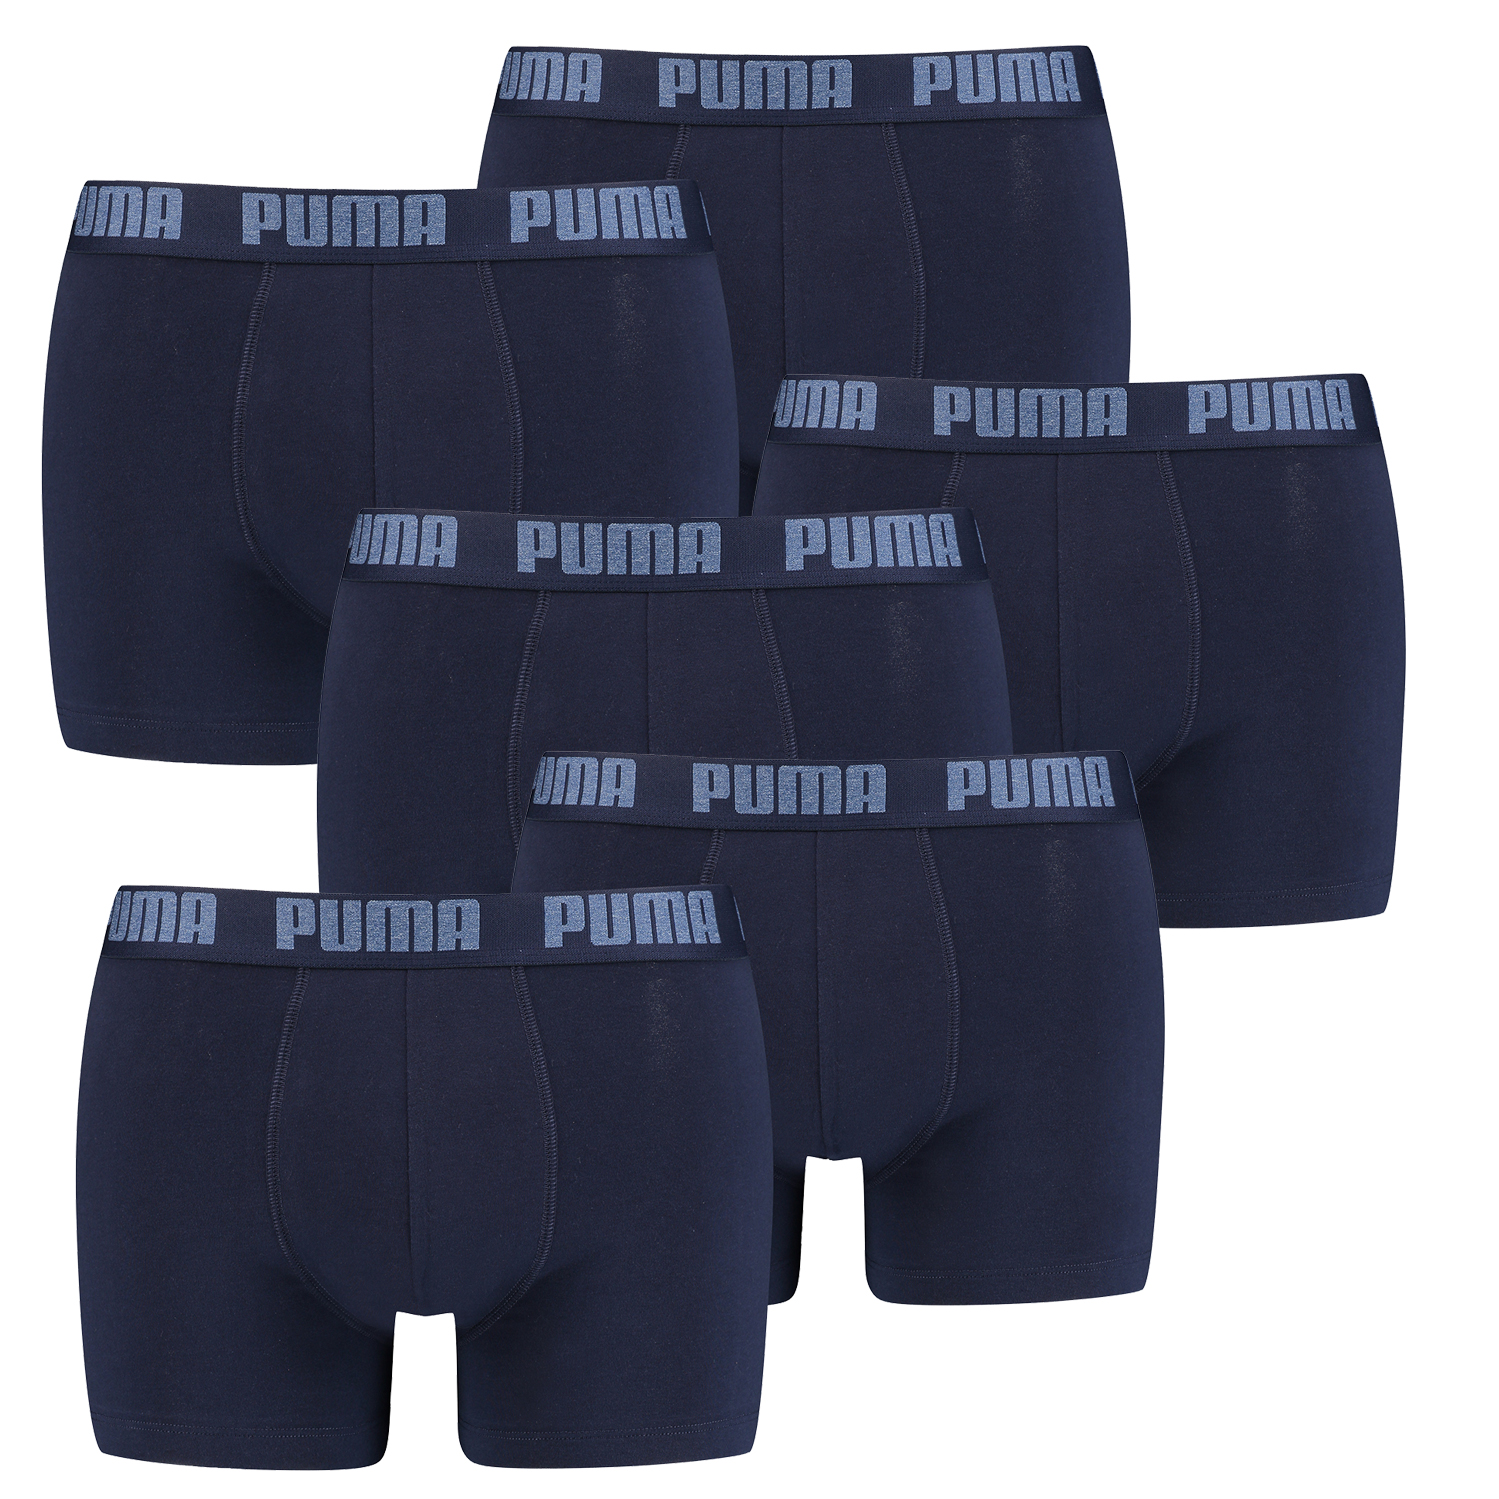 6 er Pack Puma Boxer Boxershorts Men Herren Unterhose Pant Unterwäsche